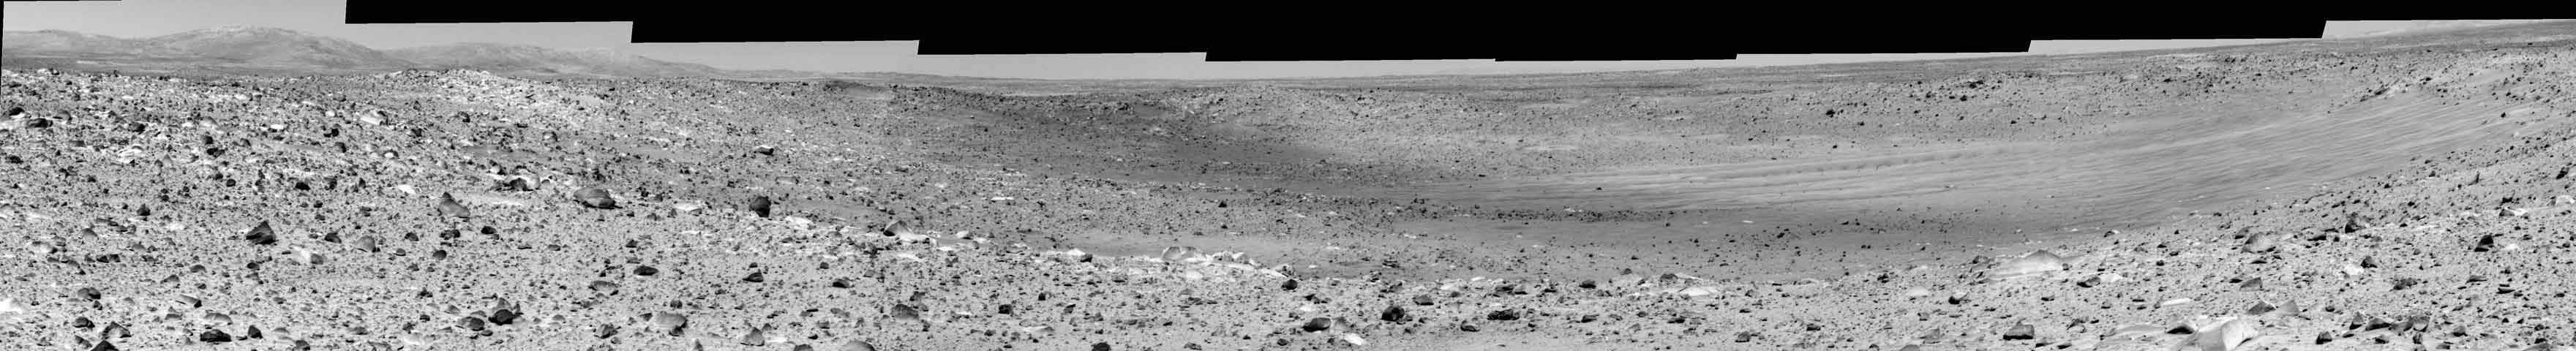 Le cratère Missoula sur Mars